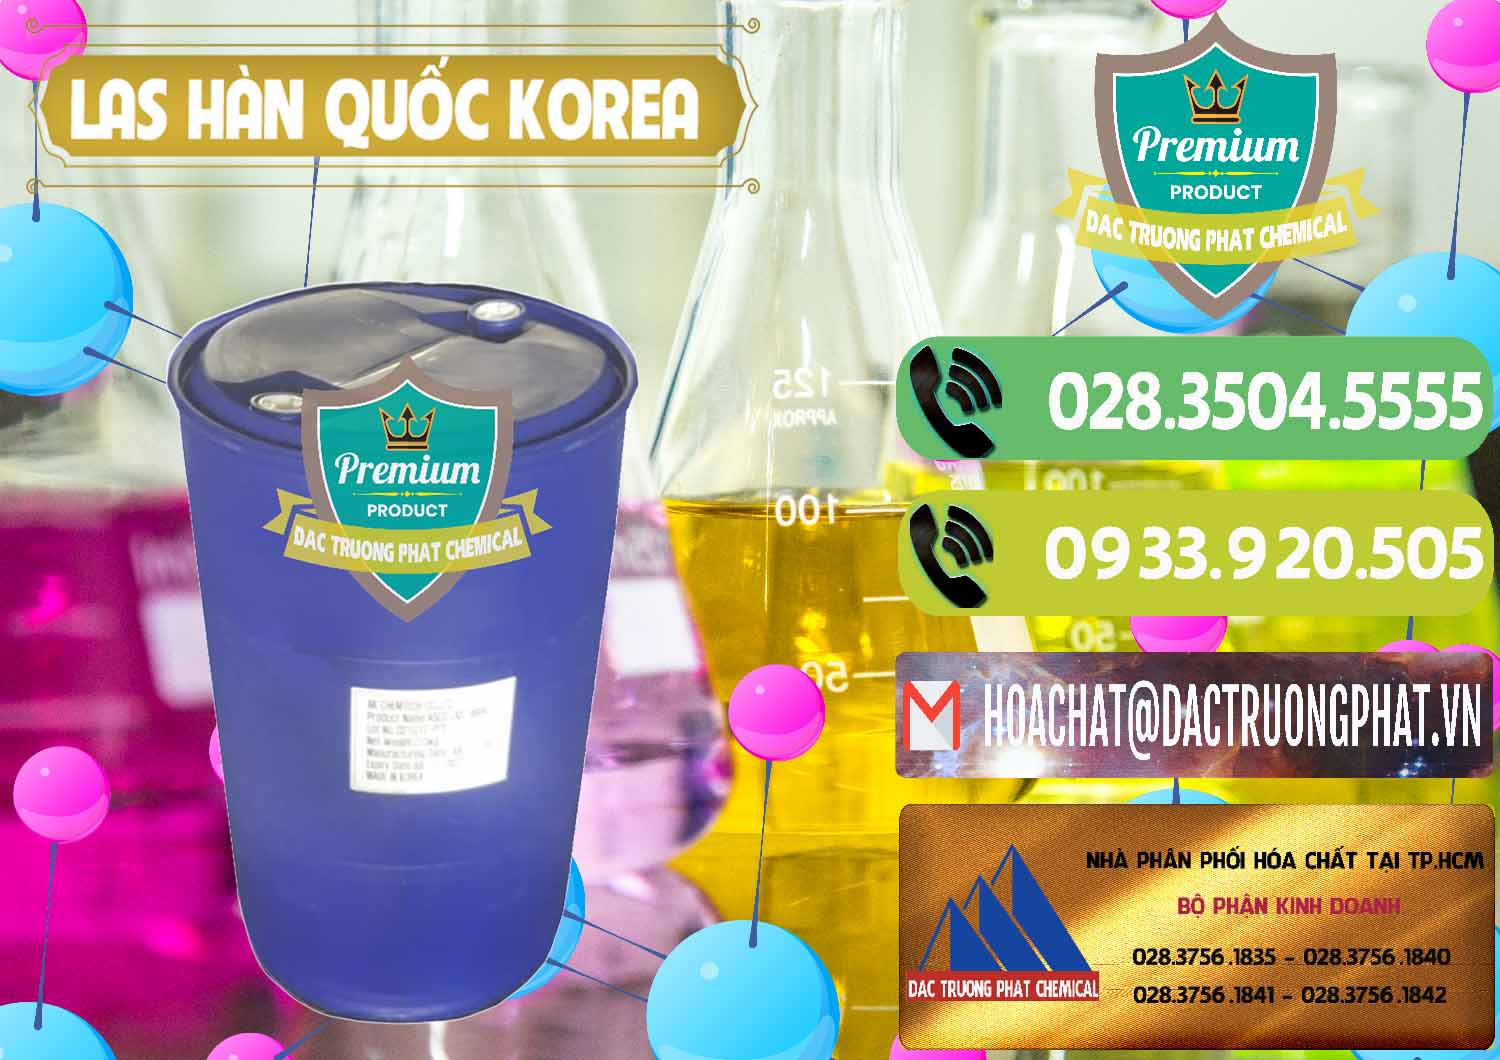 Cty chuyên kinh doanh _ bán Chất tạo bọt Las AK Chemtech ASCO Hàn Quốc Korea - 0271 - Nhà phân phối - cung ứng hóa chất tại TP.HCM - hoachatmientay.vn